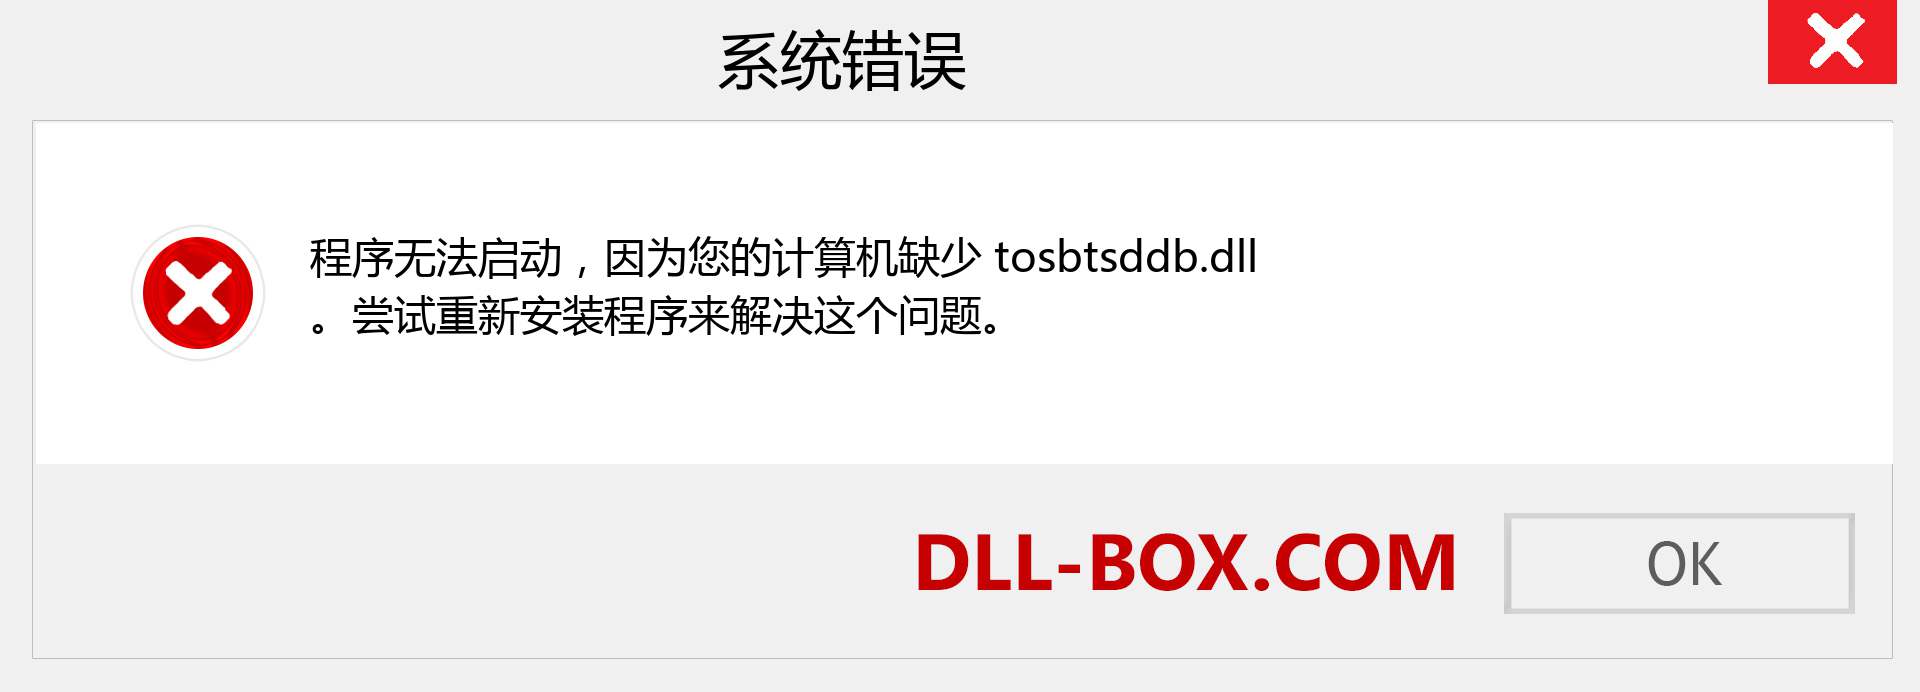 tosbtsddb.dll 文件丢失？。 适用于 Windows 7、8、10 的下载 - 修复 Windows、照片、图像上的 tosbtsddb dll 丢失错误